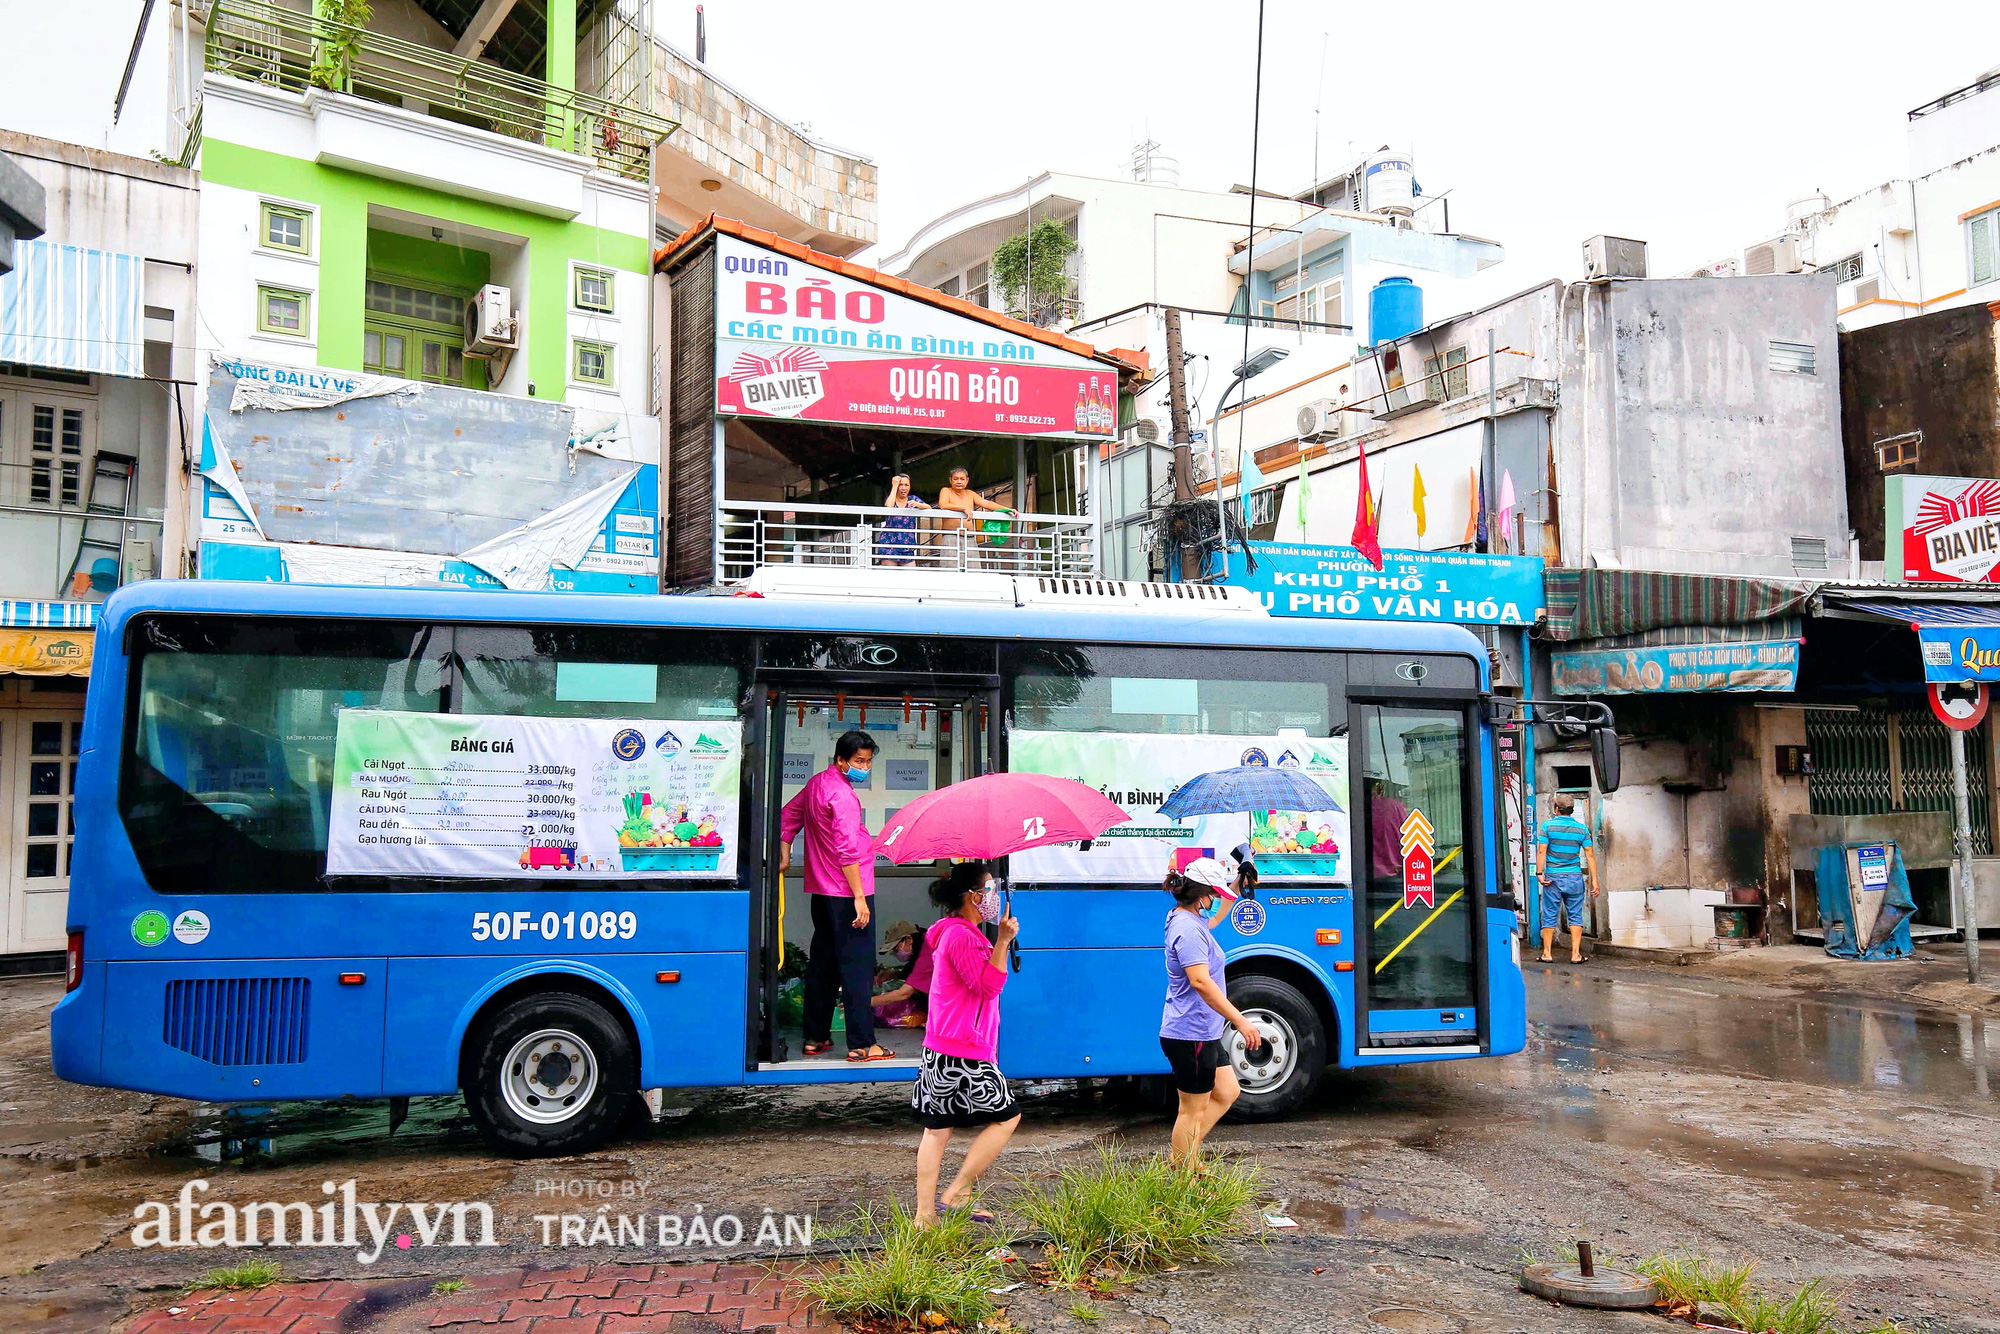 Người Sài Gòn lên xe buýt để... mua rau củ, thịt cá giá bình ổn, đảm bảo an toàn đủ các bước nhưng quan trọng chất lượng liệu ra sao? - Ảnh 2.